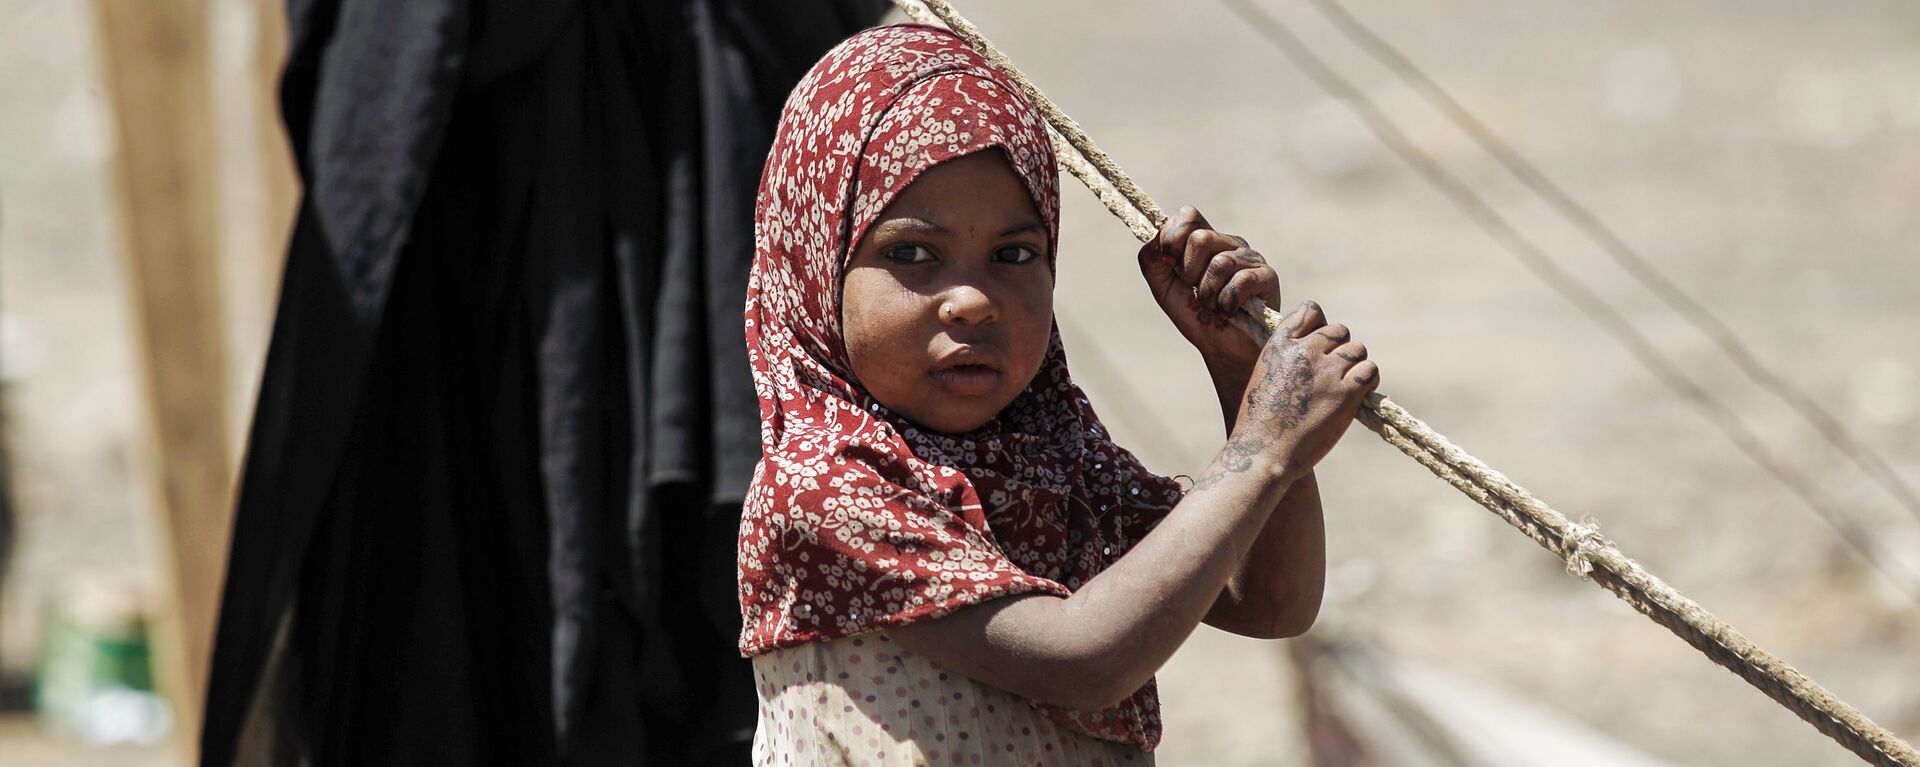 Bé gái Yemen đang chờ viện trợ nhân đạo ở Sana'a. - Sputnik Việt Nam, 1920, 24.08.2021